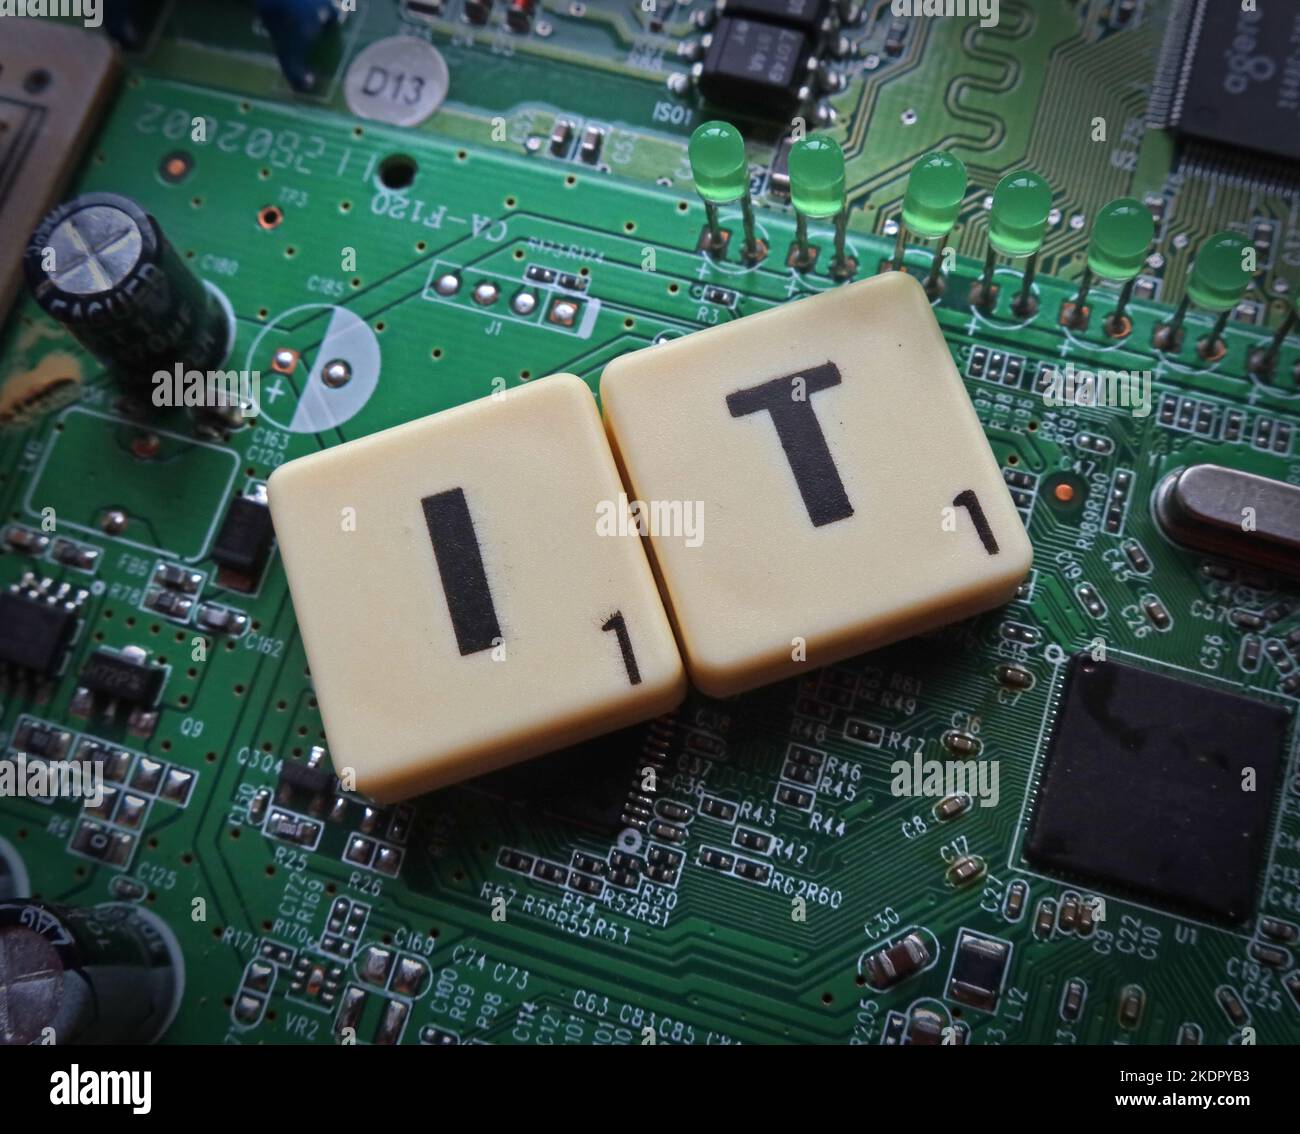 IT - technologie de l'information - Scrabble lettres / mot sur un PCB électronique Banque D'Images